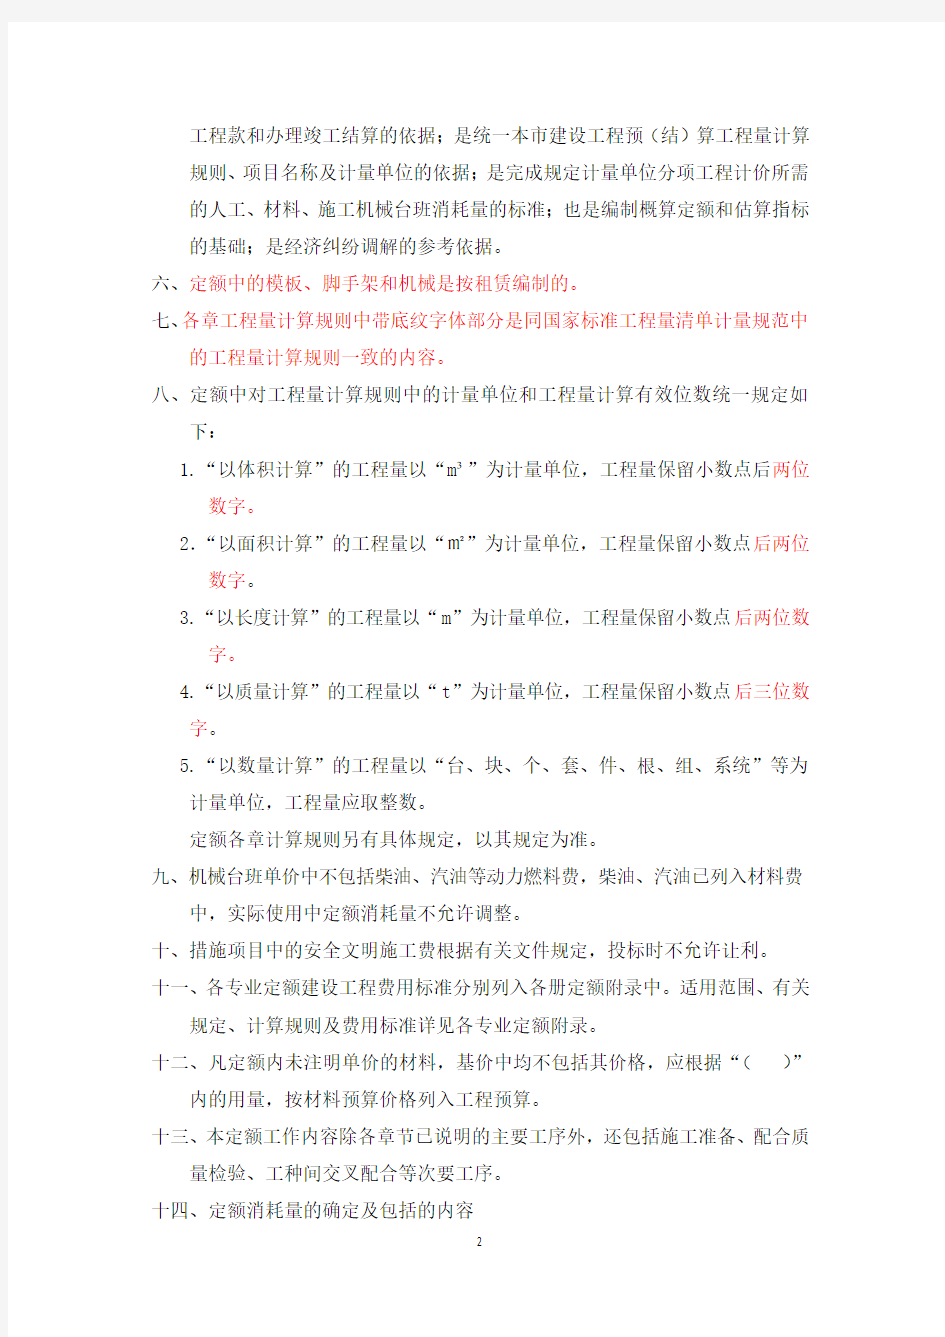 2012北京定额说明、计算规则(上)